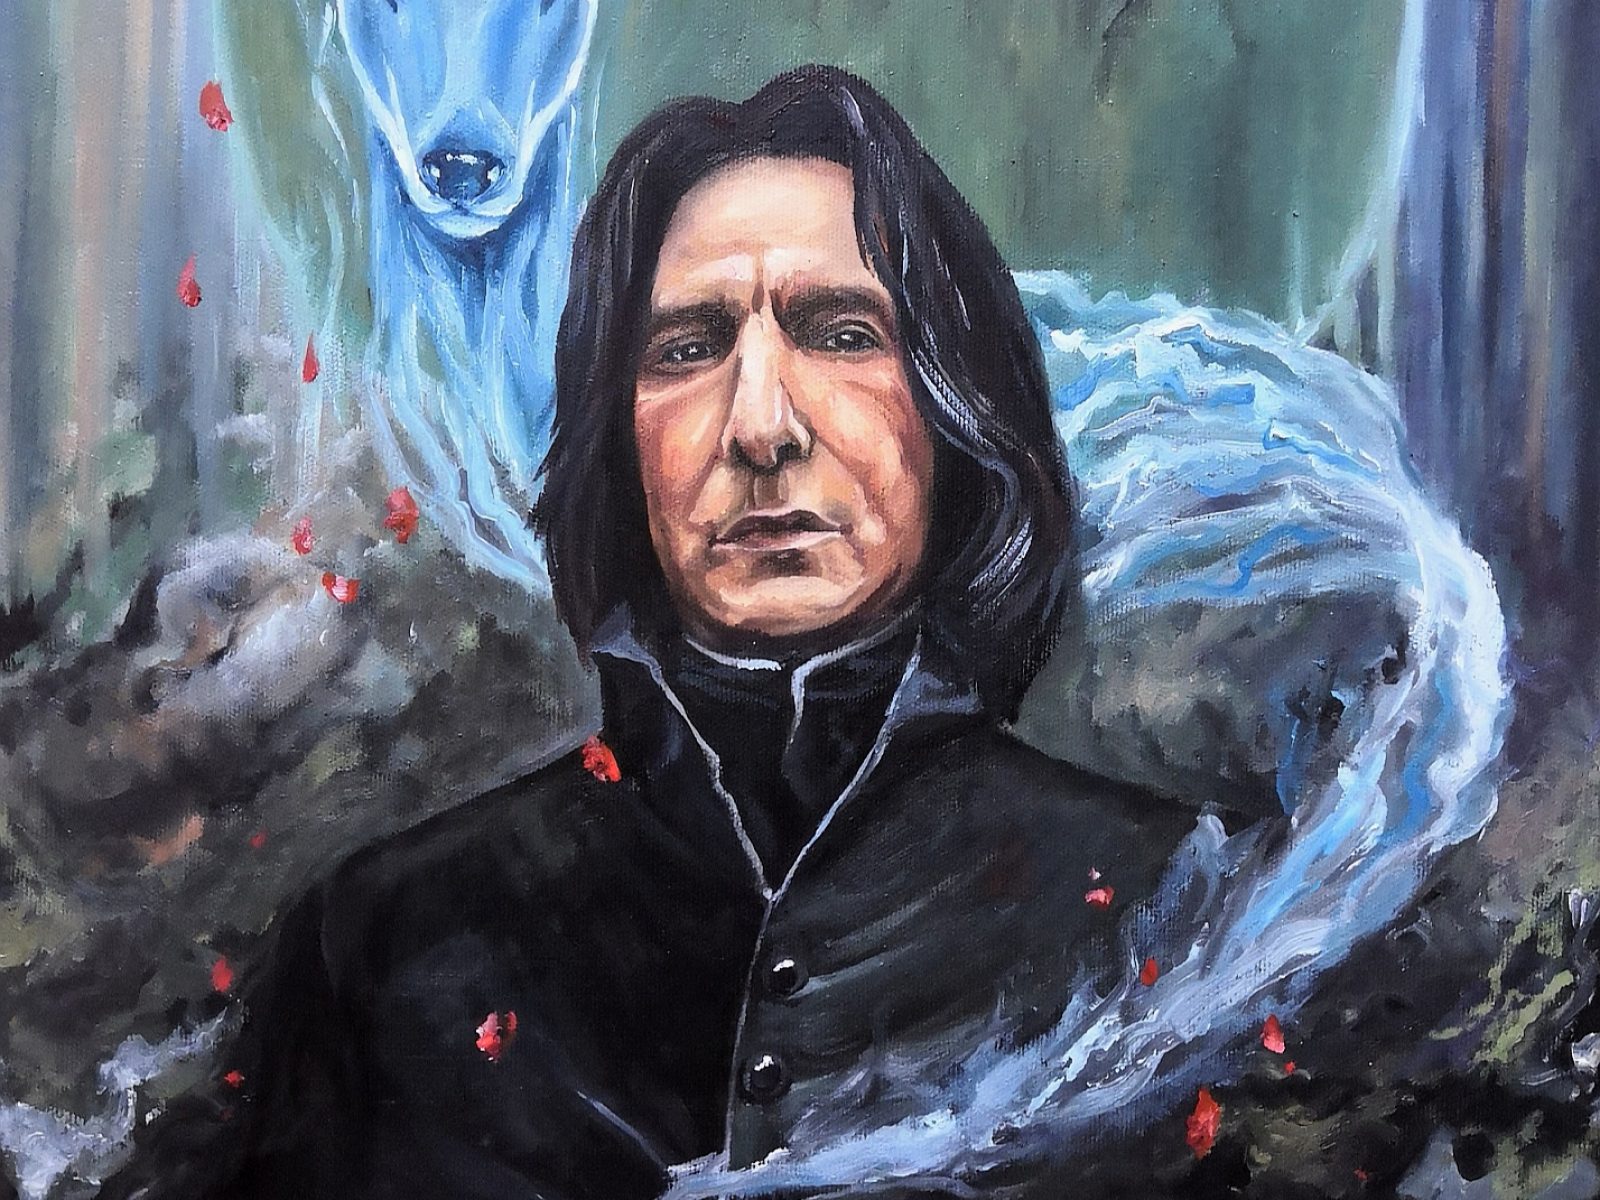 Severus Snape olejomaľba na plátn eso srnkou a elixírom.